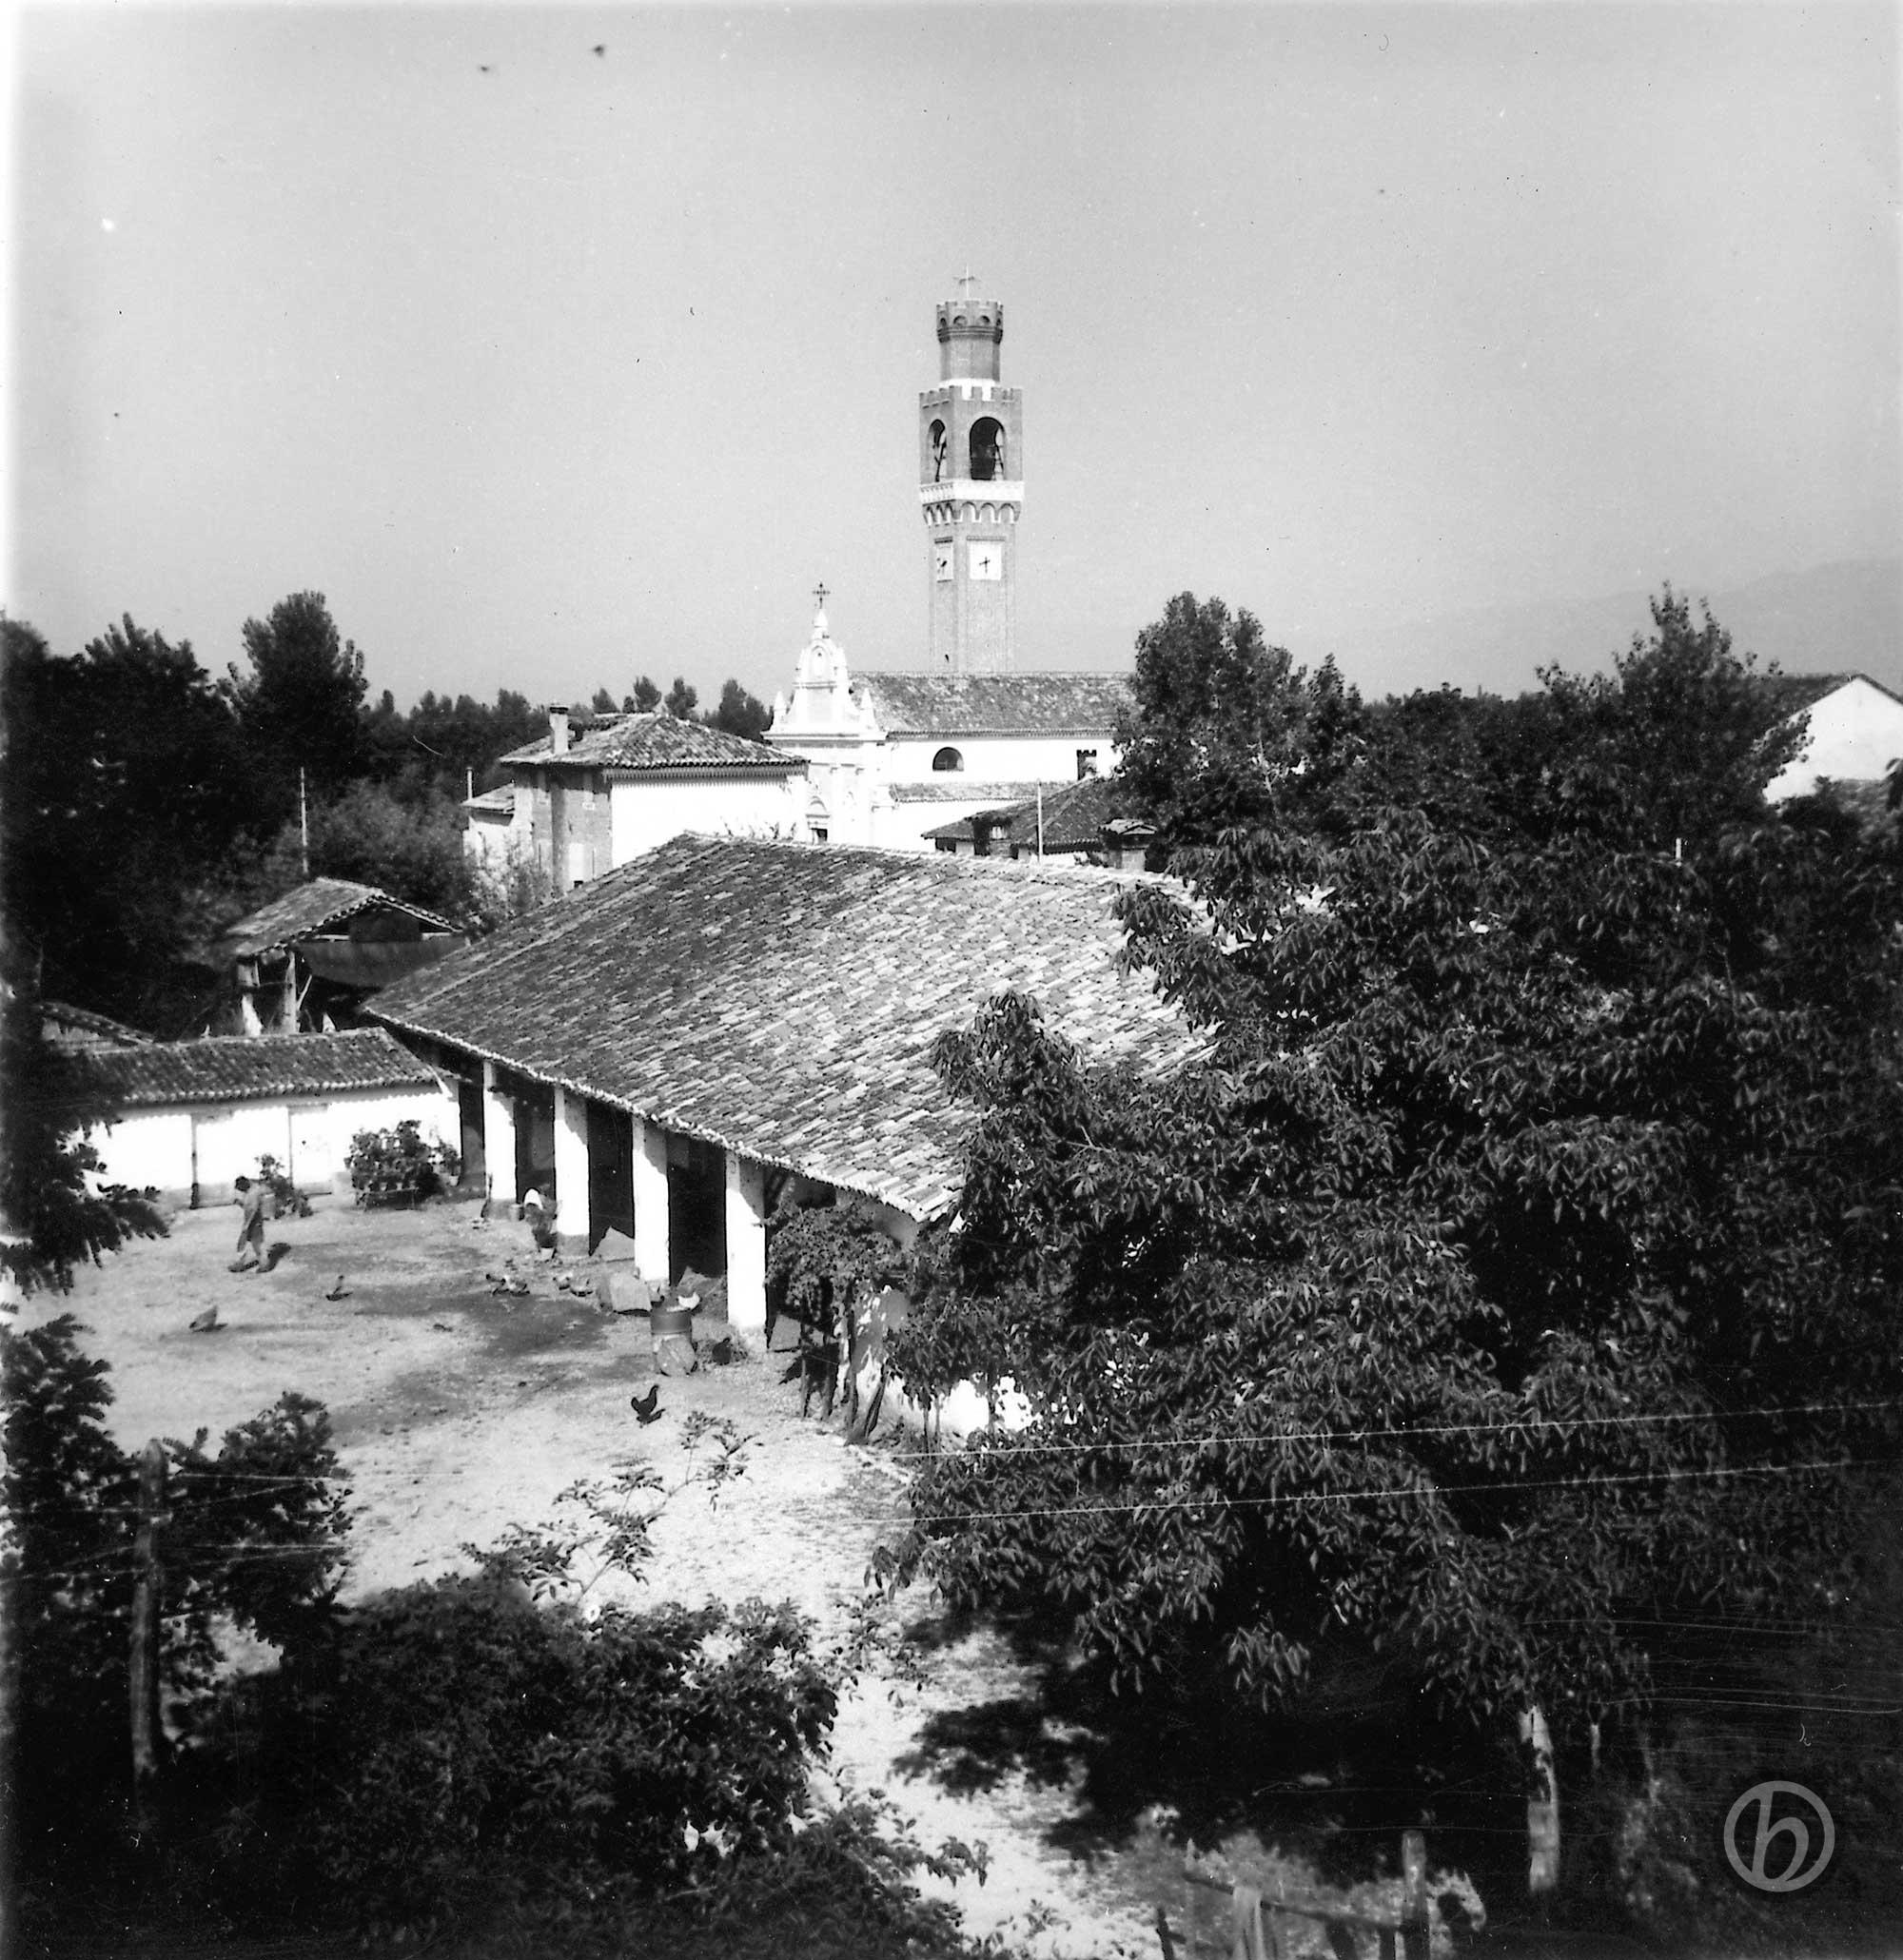 Foto Ida Trinca - 23 agosto 1961: l'aia di casa Martini e sullo sfondo la chiesa parrocchiale viste dalle finestre della Barchessa